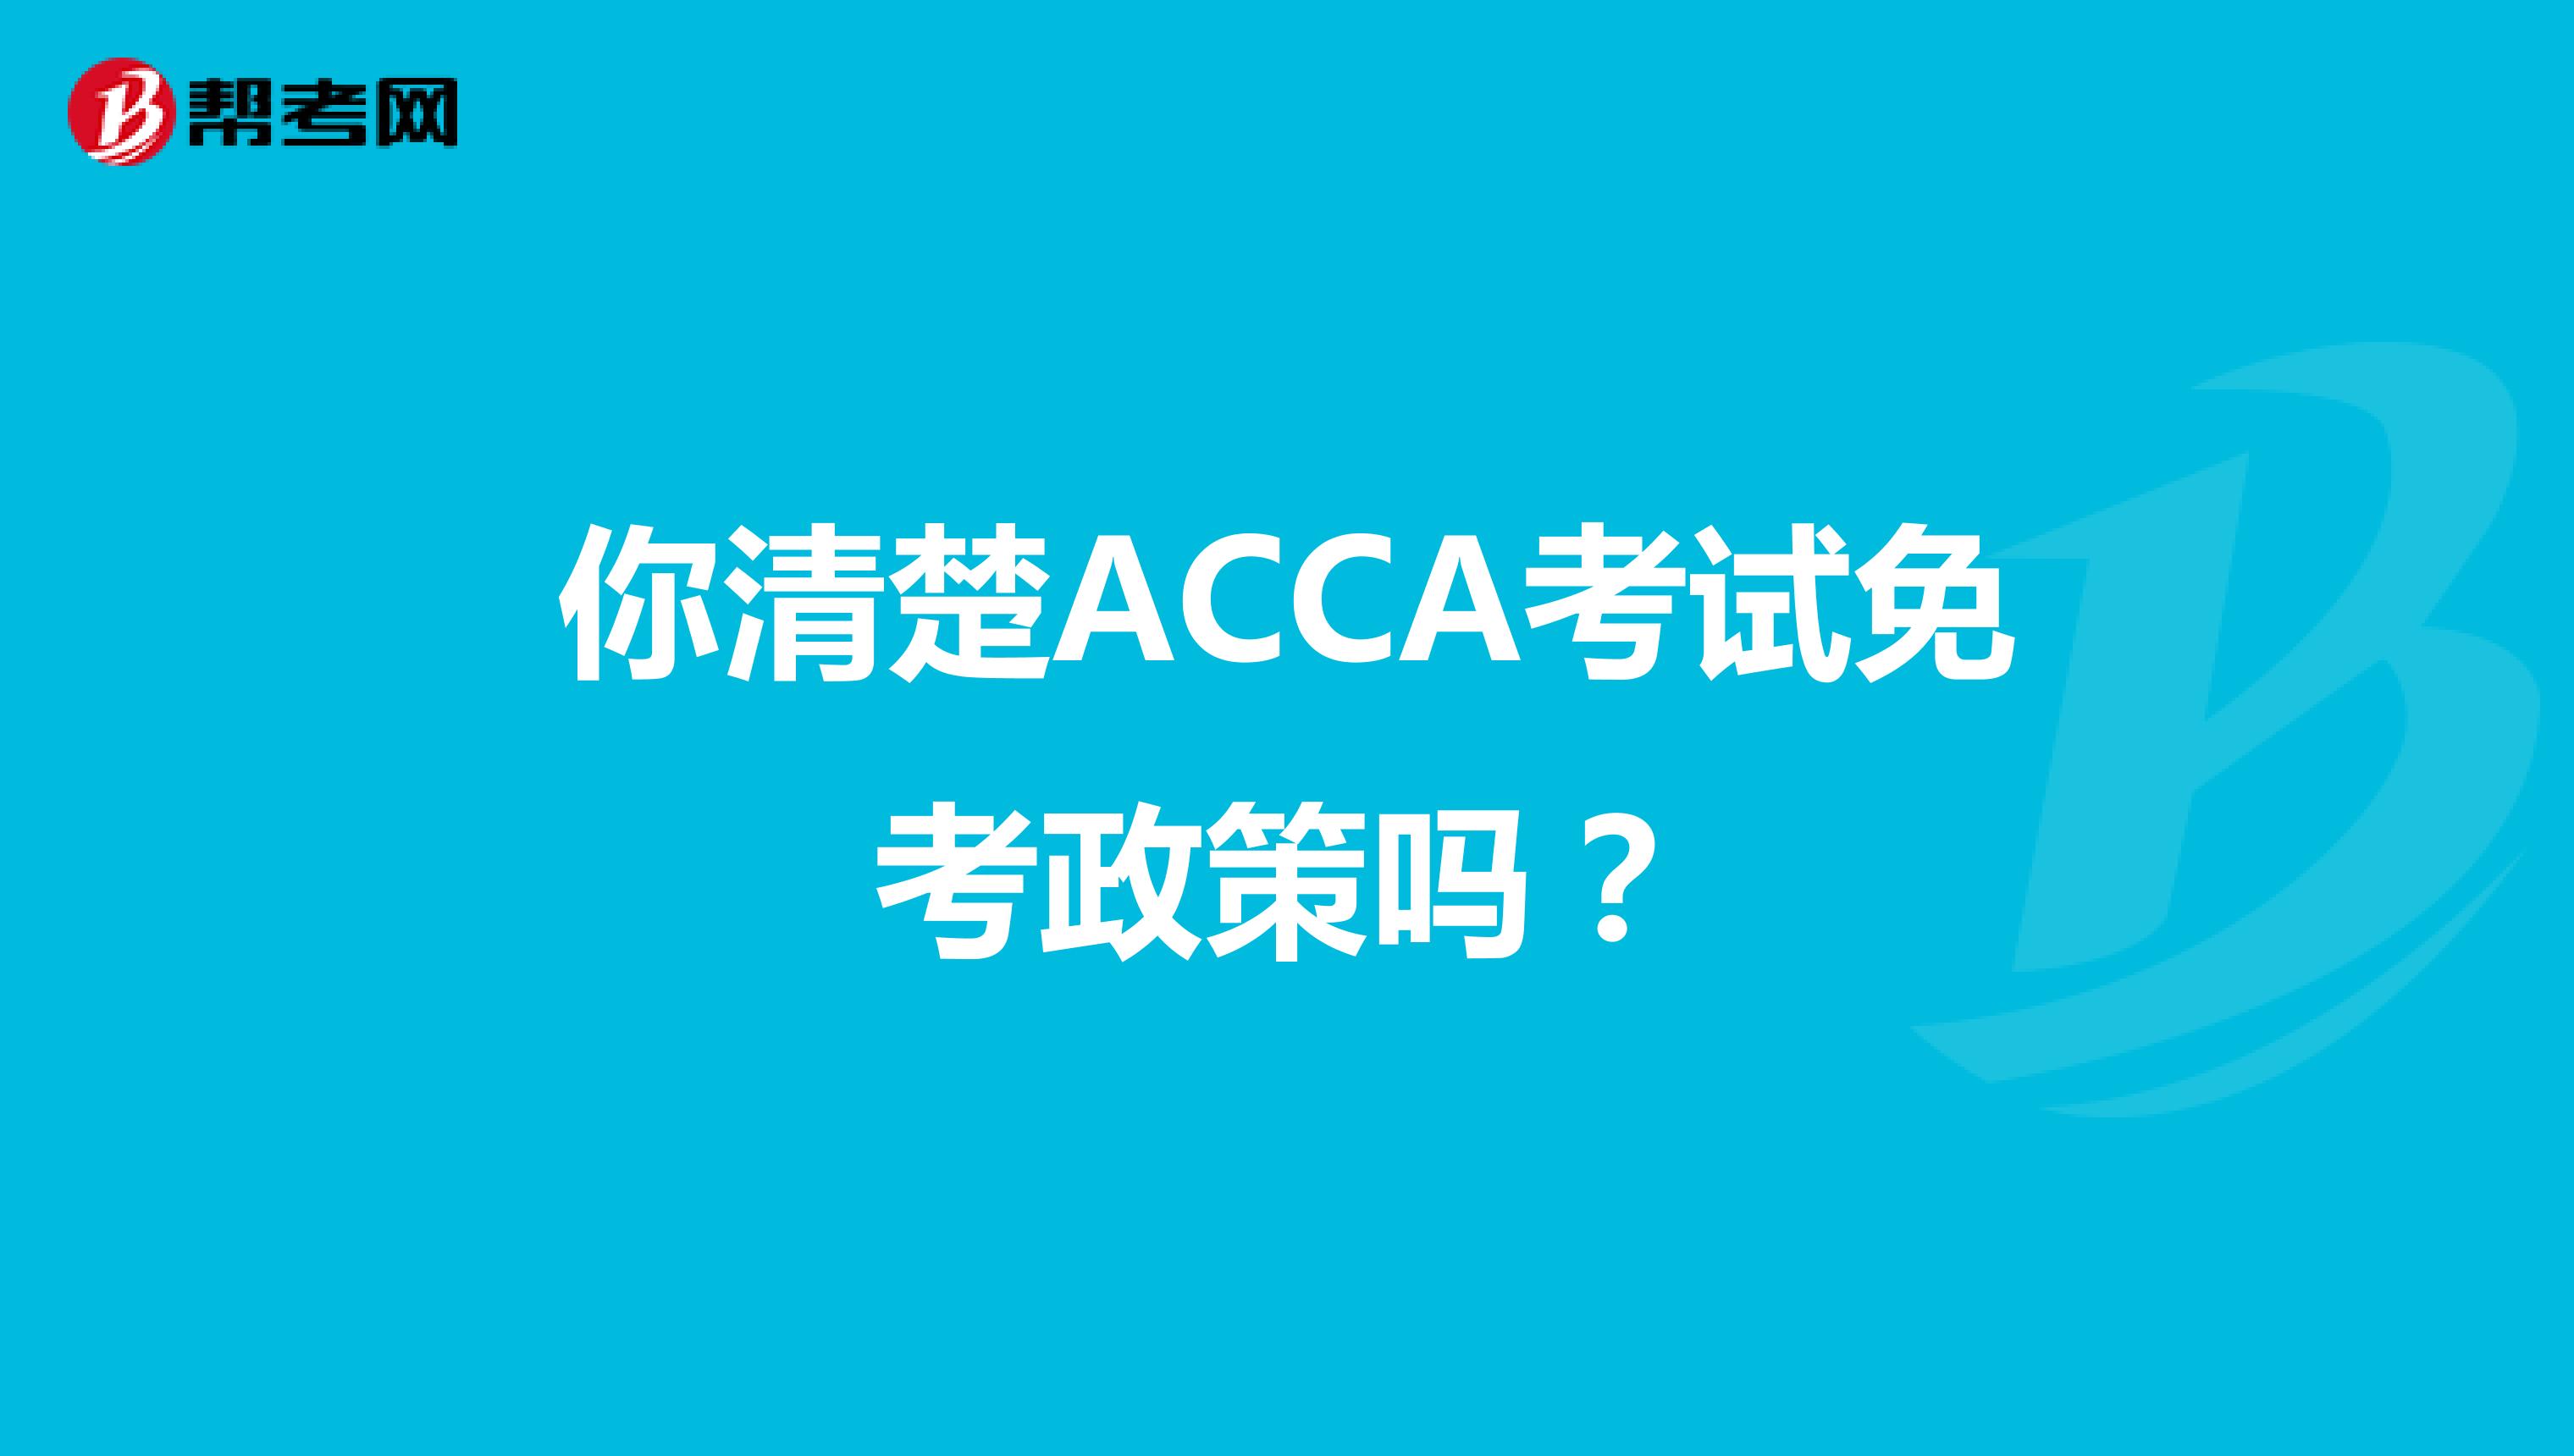 你清楚ACCA考试免考政策吗？